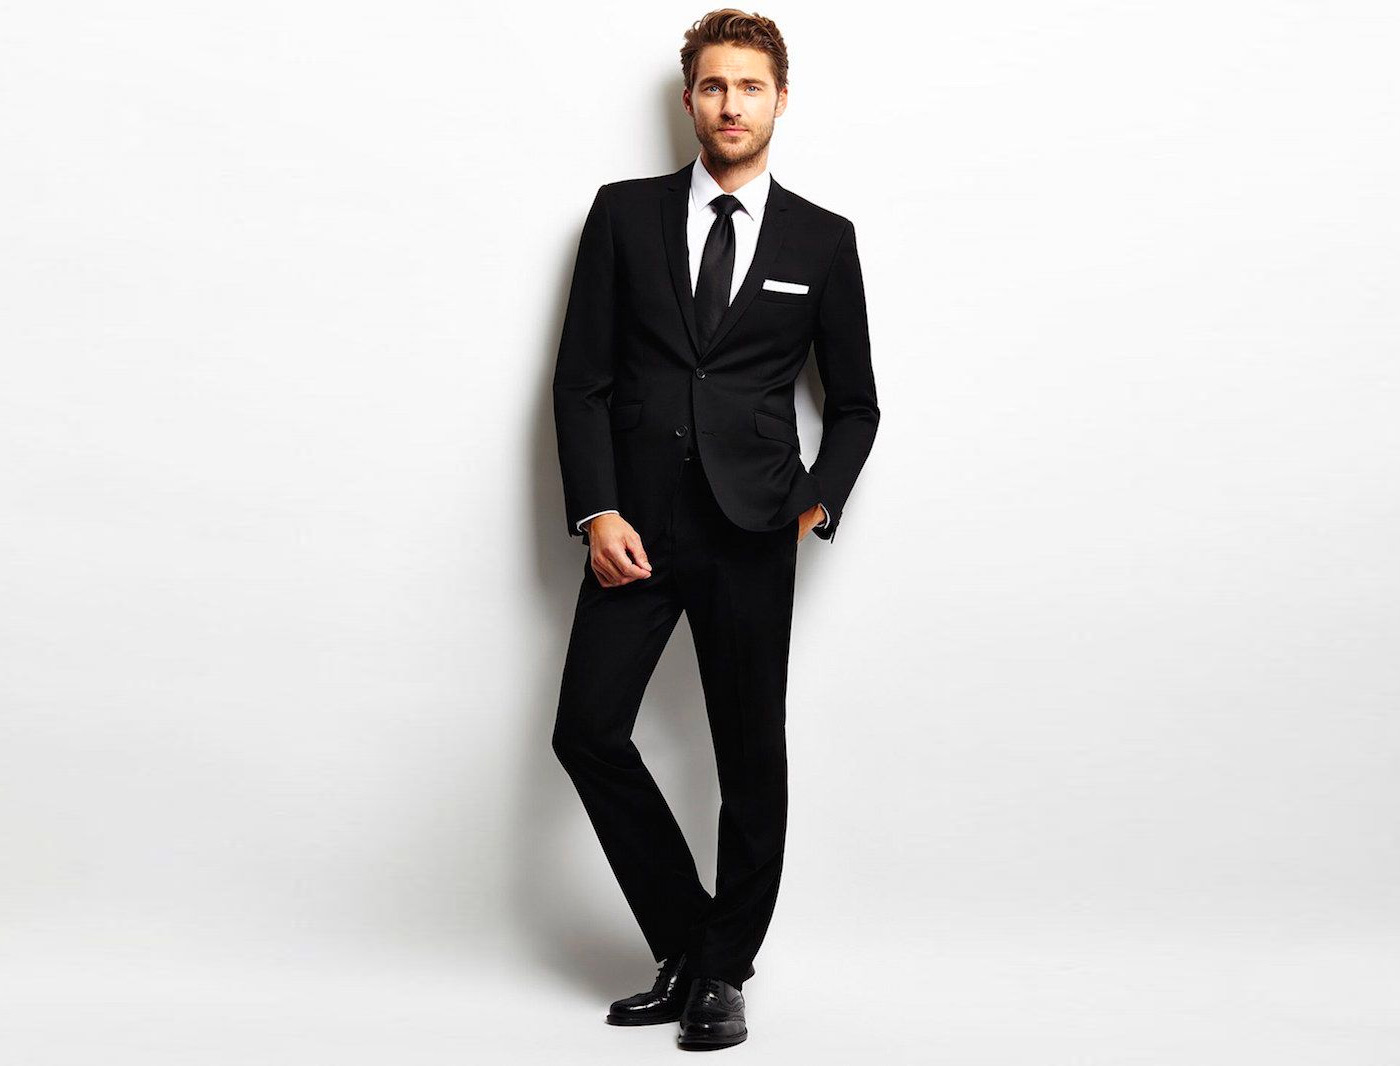 6 Best Black Suit Combinations for Parties